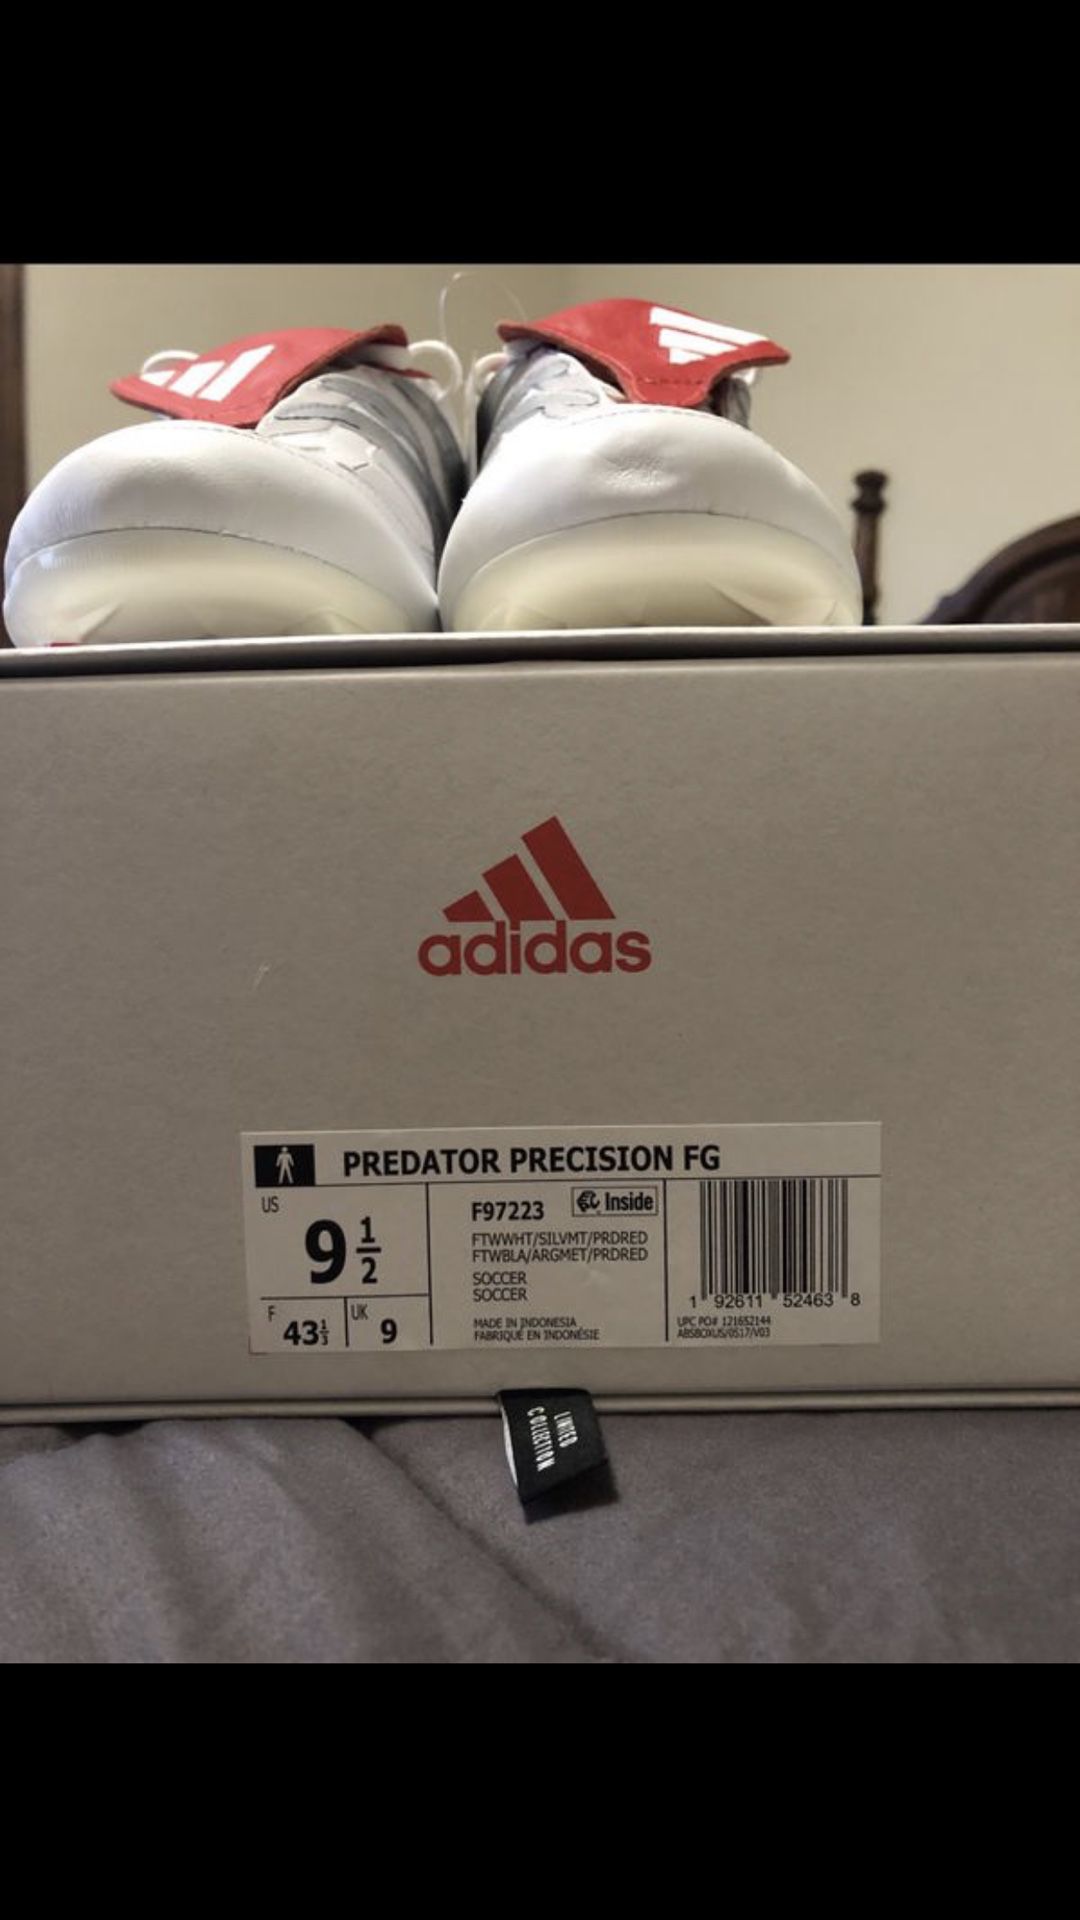 adidas predator precision fg david beckham remake size us 9.5